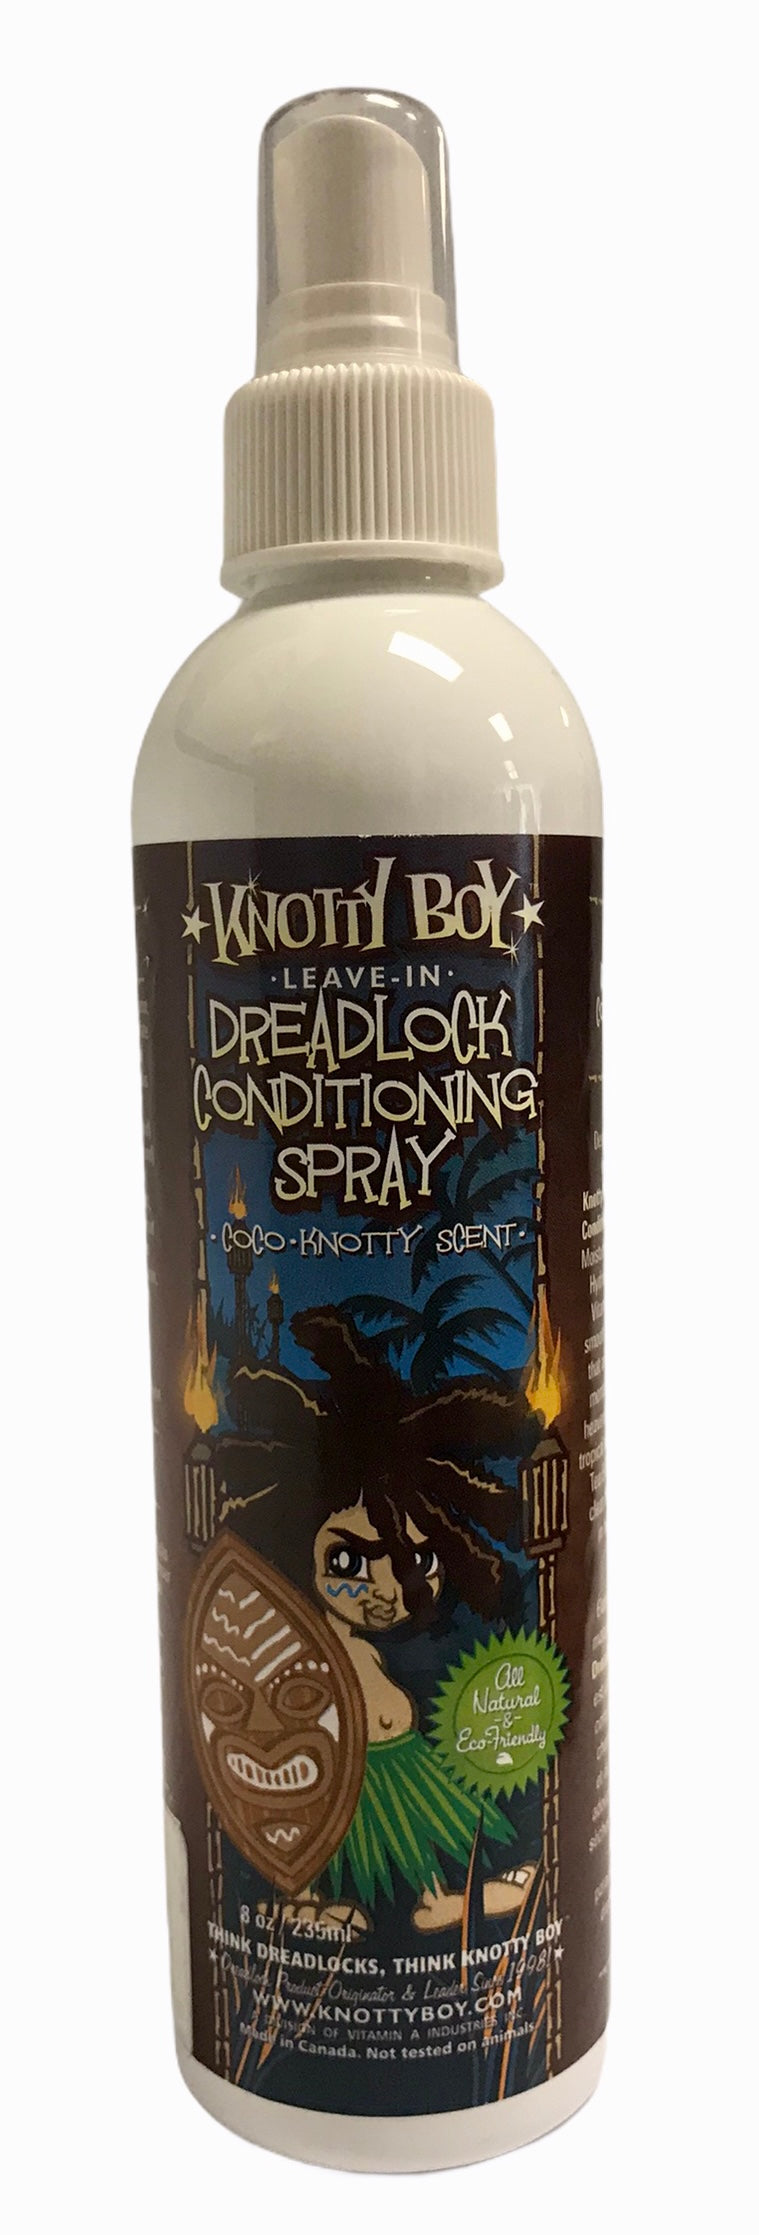  Dreadlock Conditioning Spray & Deodorizer - 8oz